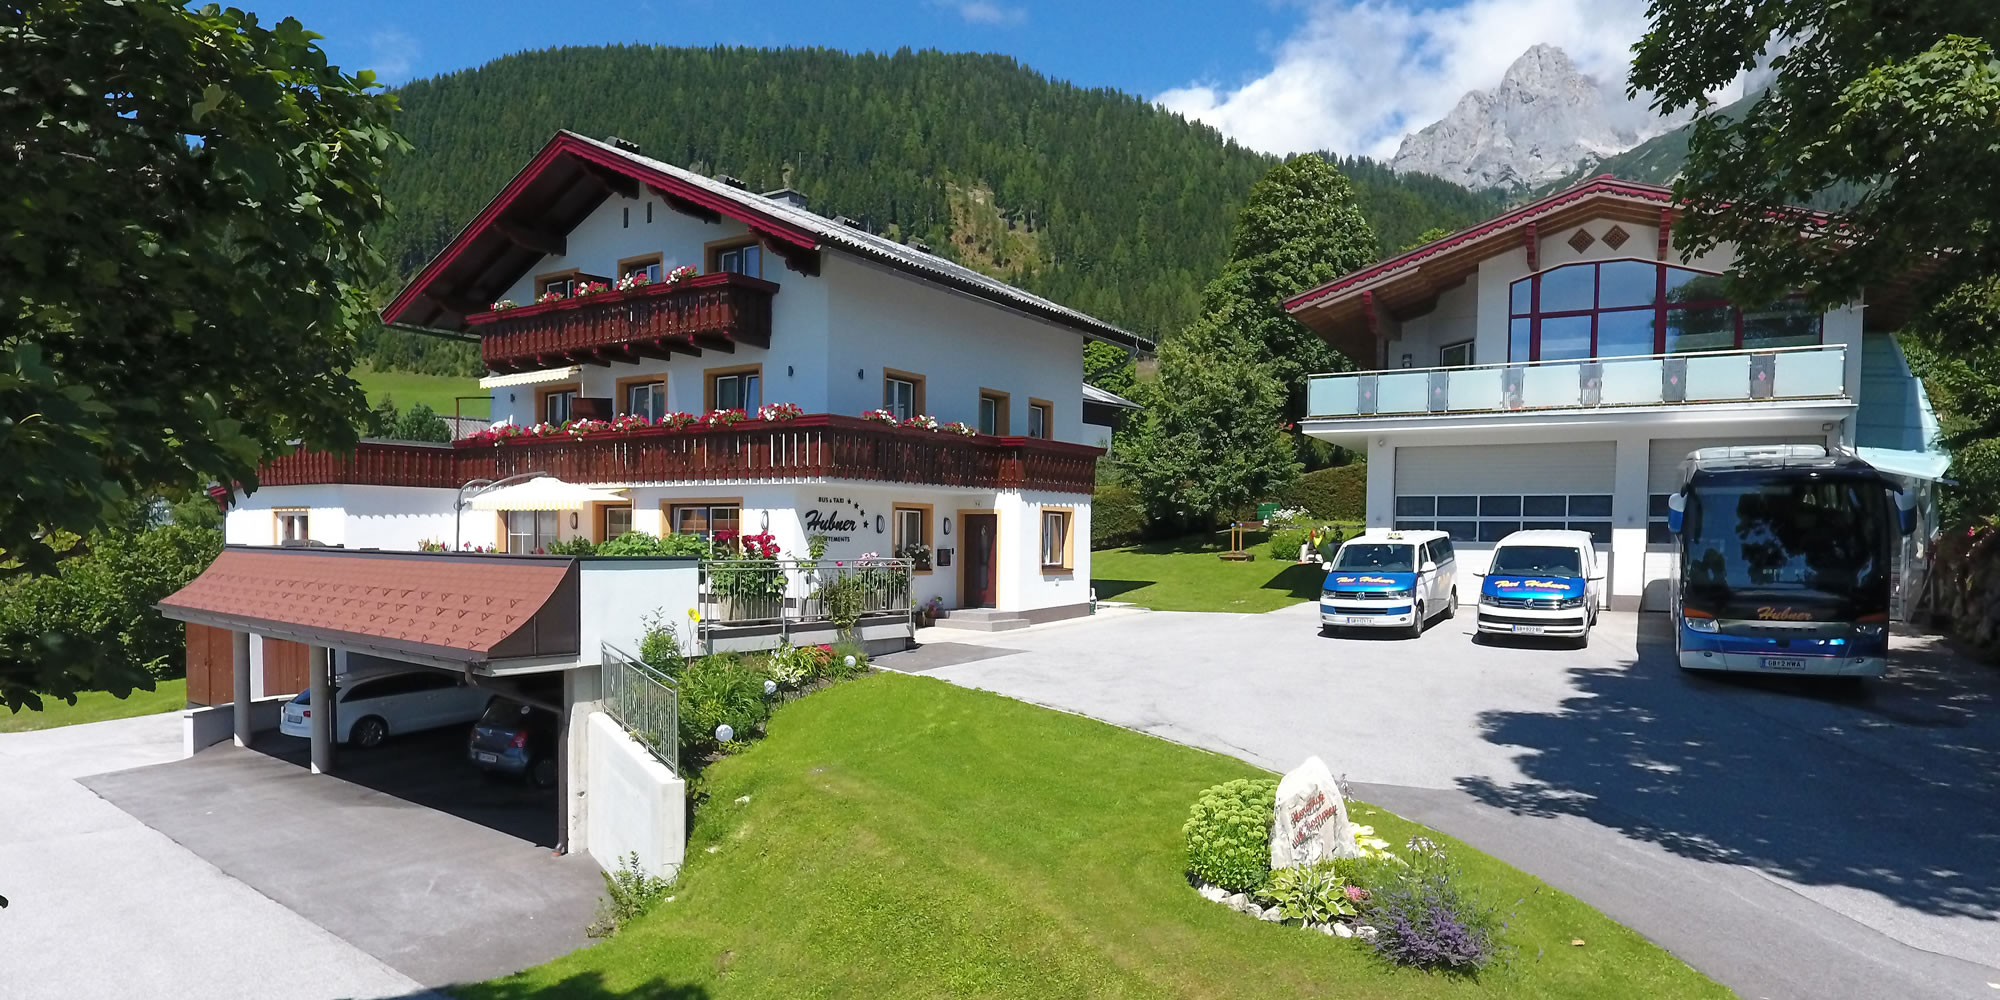 Appartement Hubner in Ramsau, Region Schladming Dachstein